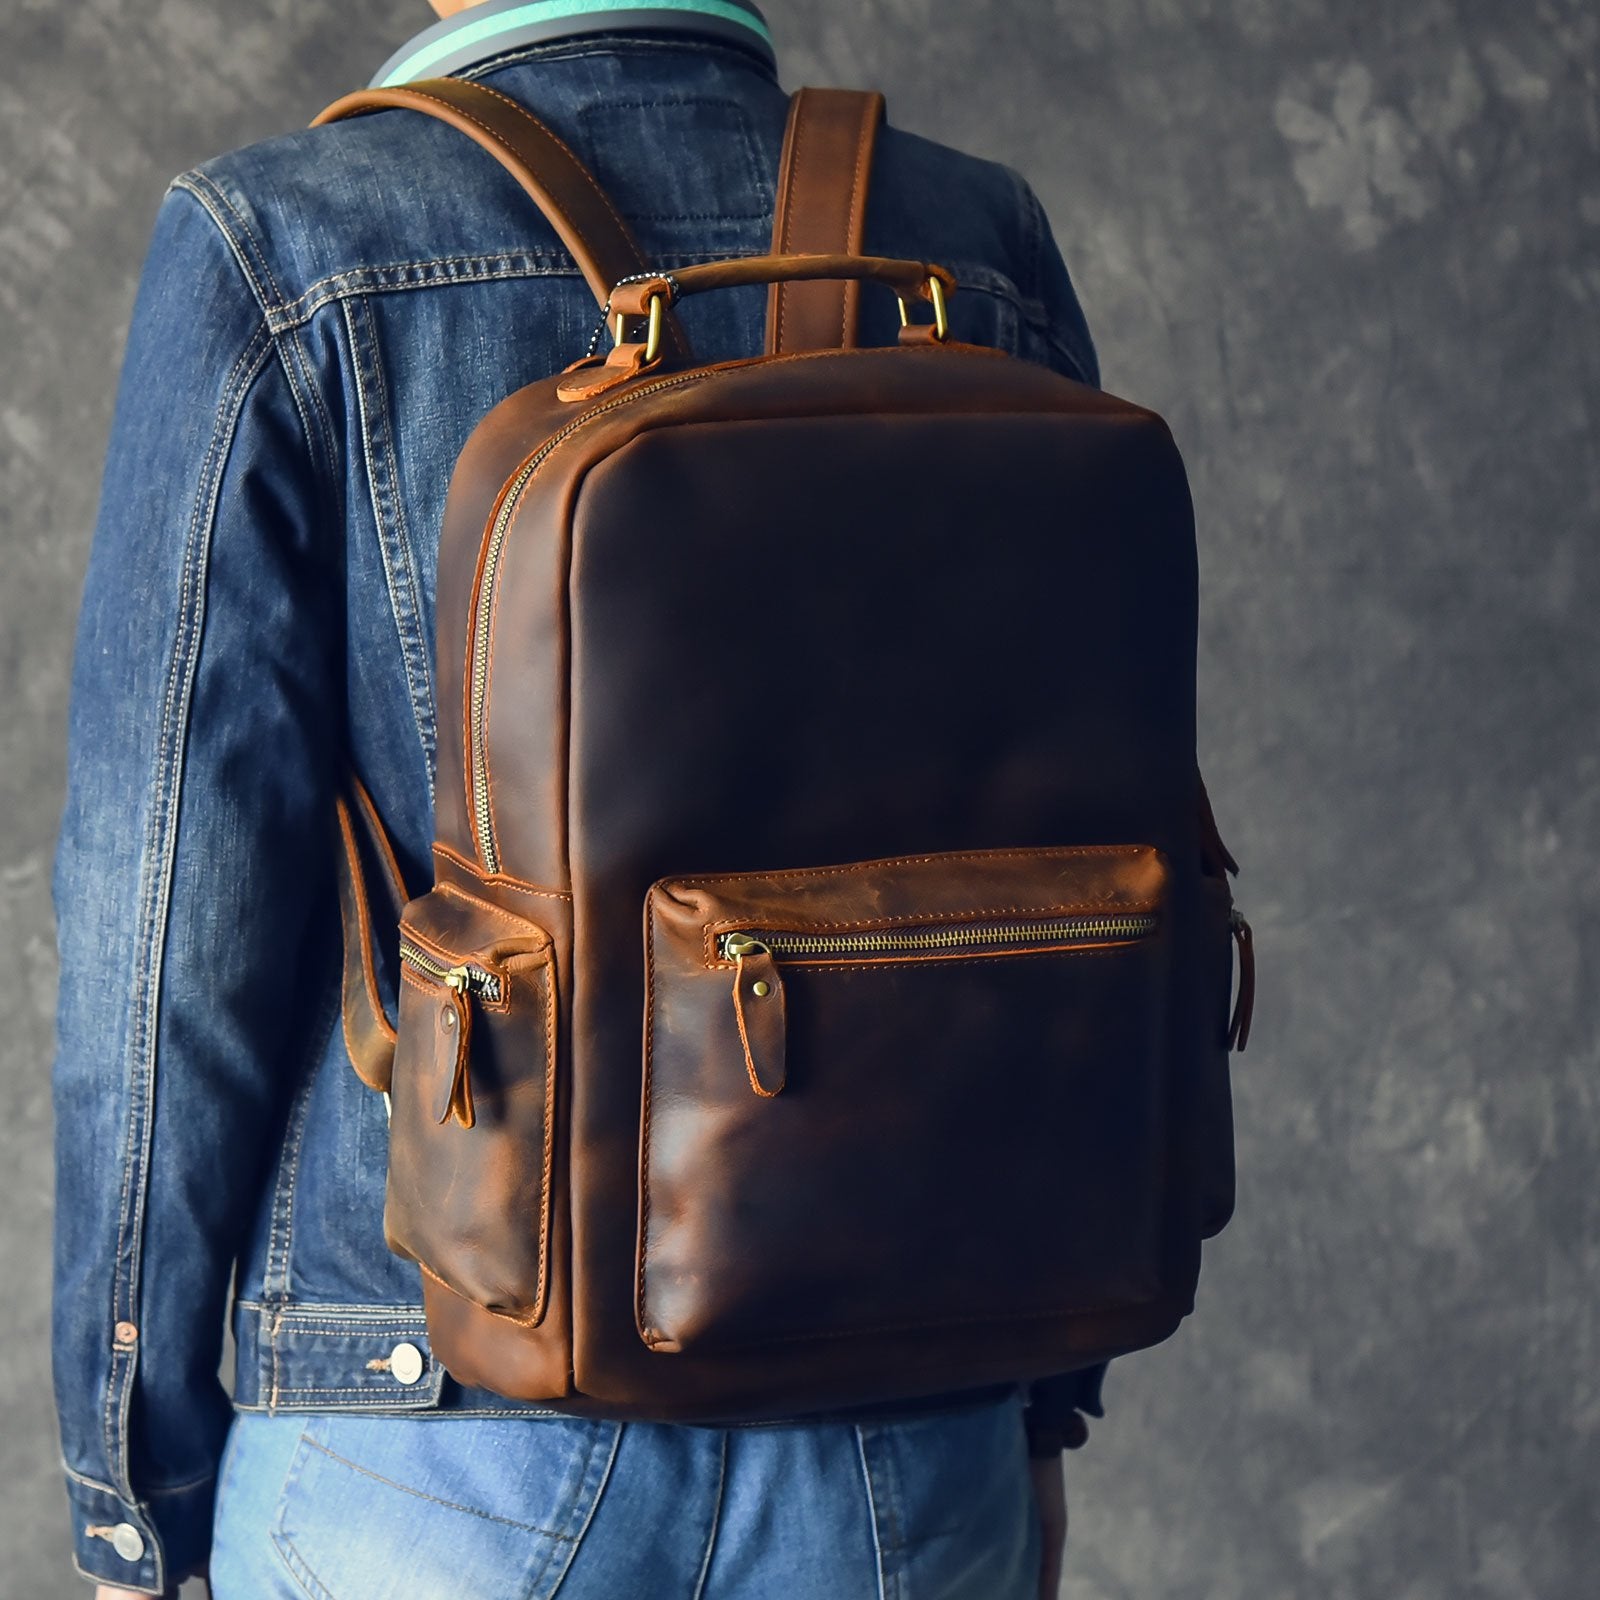 Vintage Brown Leather Mens 15" Laptop Backpack Hiking Backpack Travel Backpack College School Bag for Men